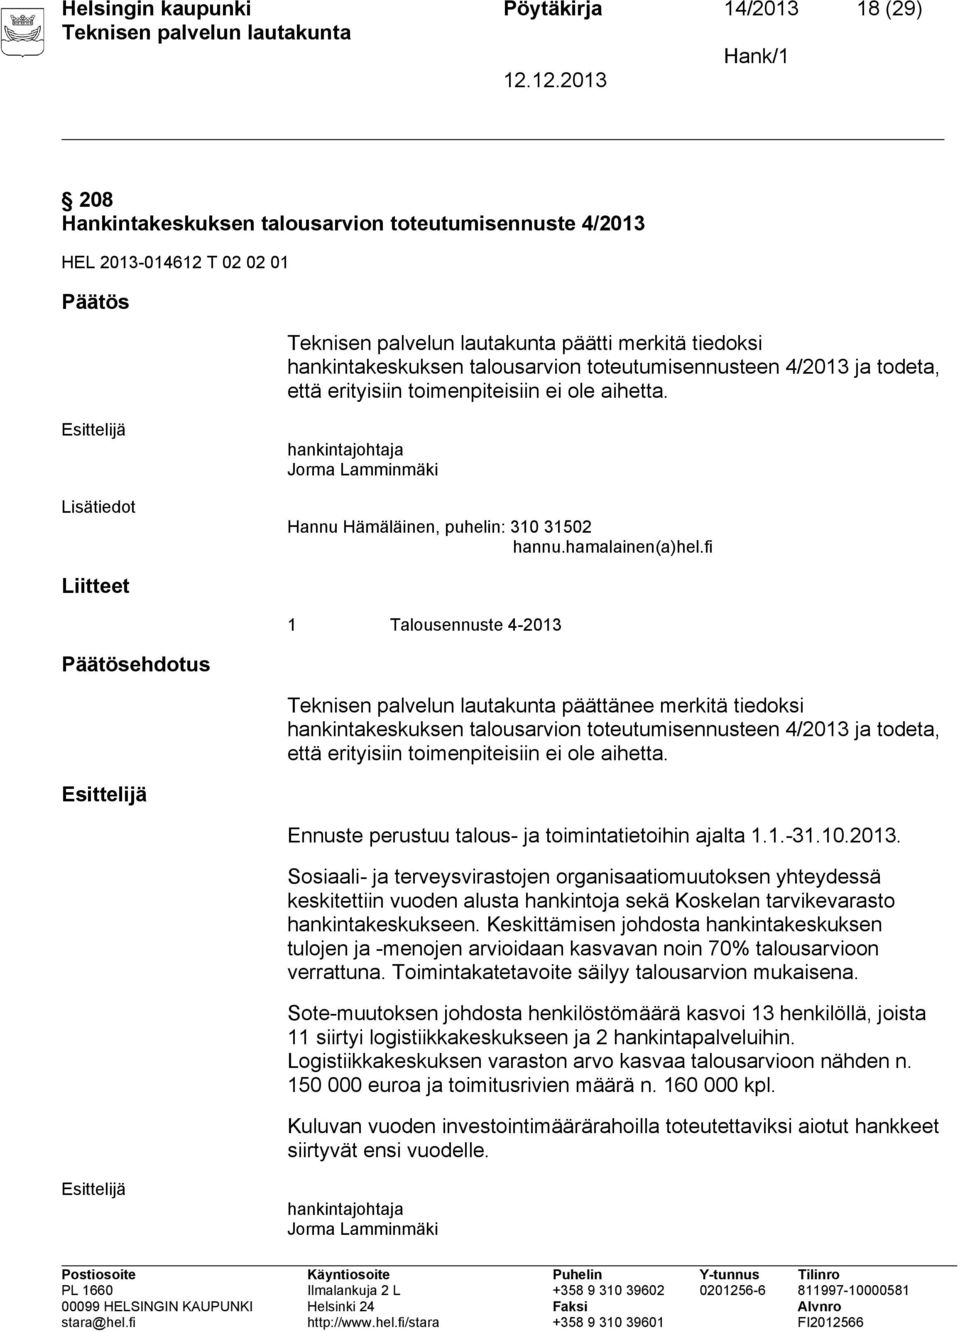 fi Liitteet 1 Talousennuste 4-2013 Päätösehdotus päättänee merkitä tiedoksi hankintakeskuksen talousarvion toteutumisennusteen 4/2013 ja todeta, että erityisiin toimenpiteisiin ei ole aihetta.